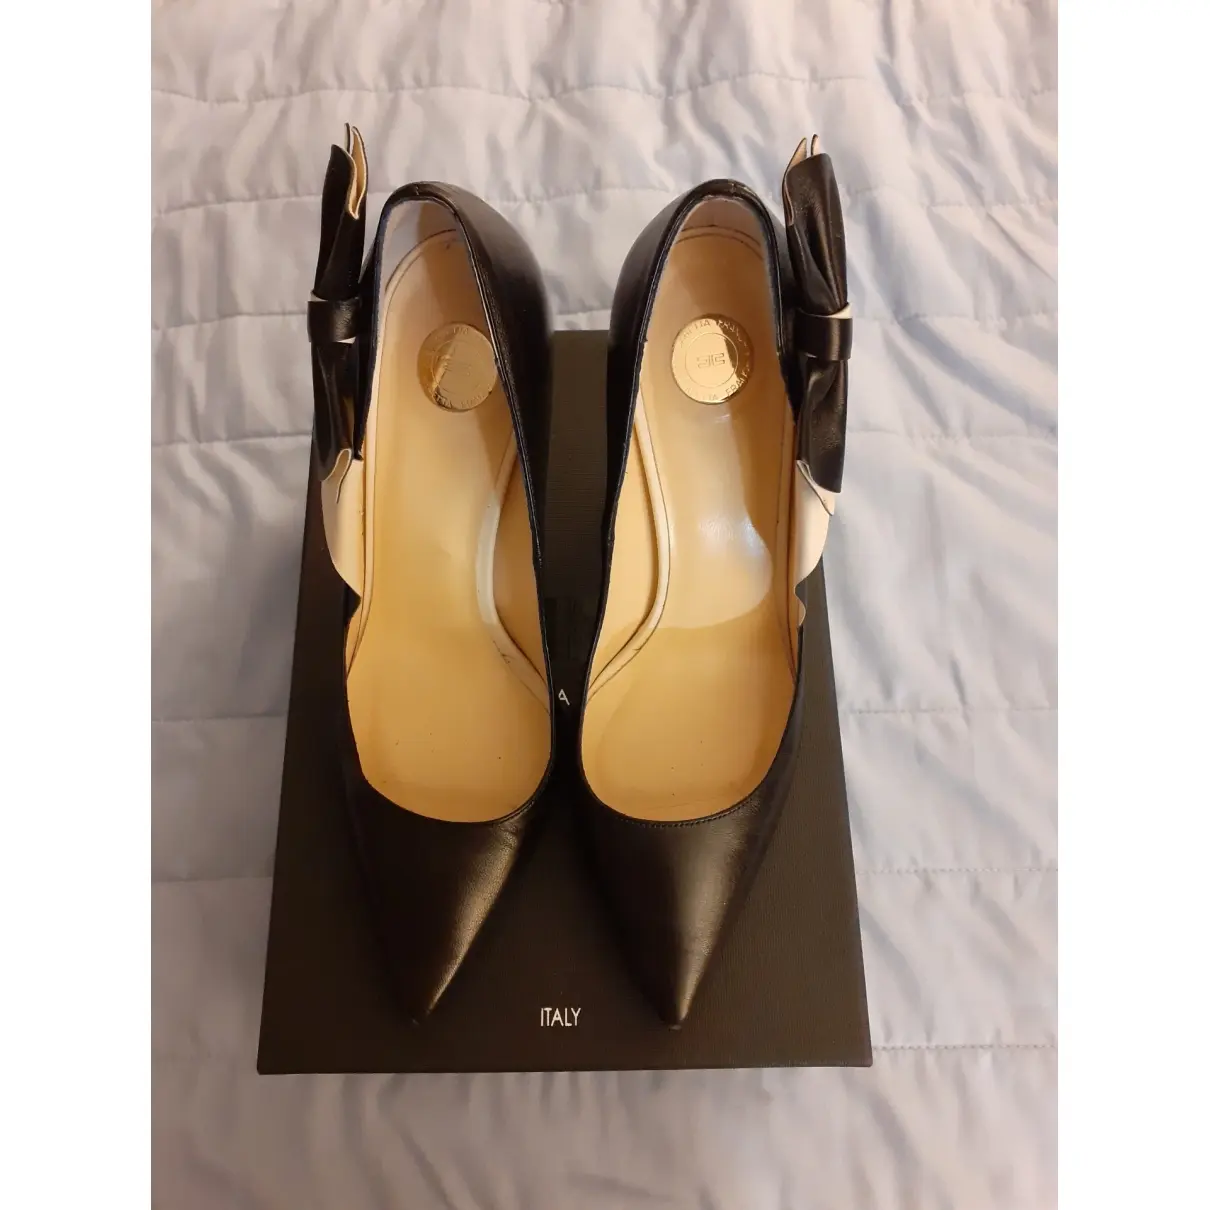 Elisabetta Franchi Leather heels for sale